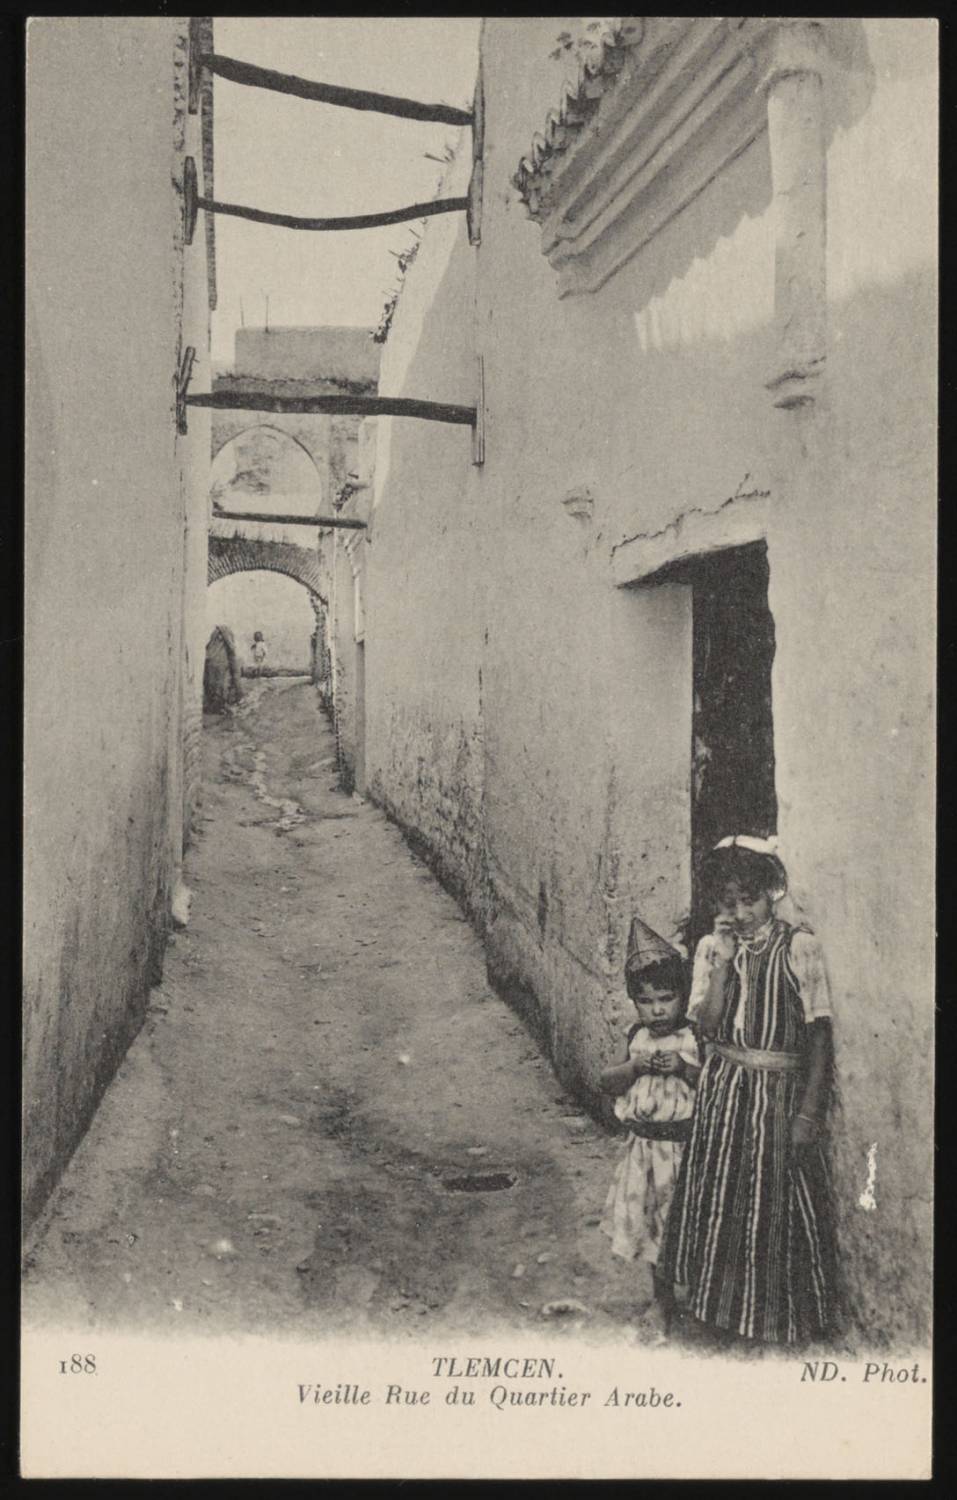 View of street in Tlemcen in the Tlemcen medina